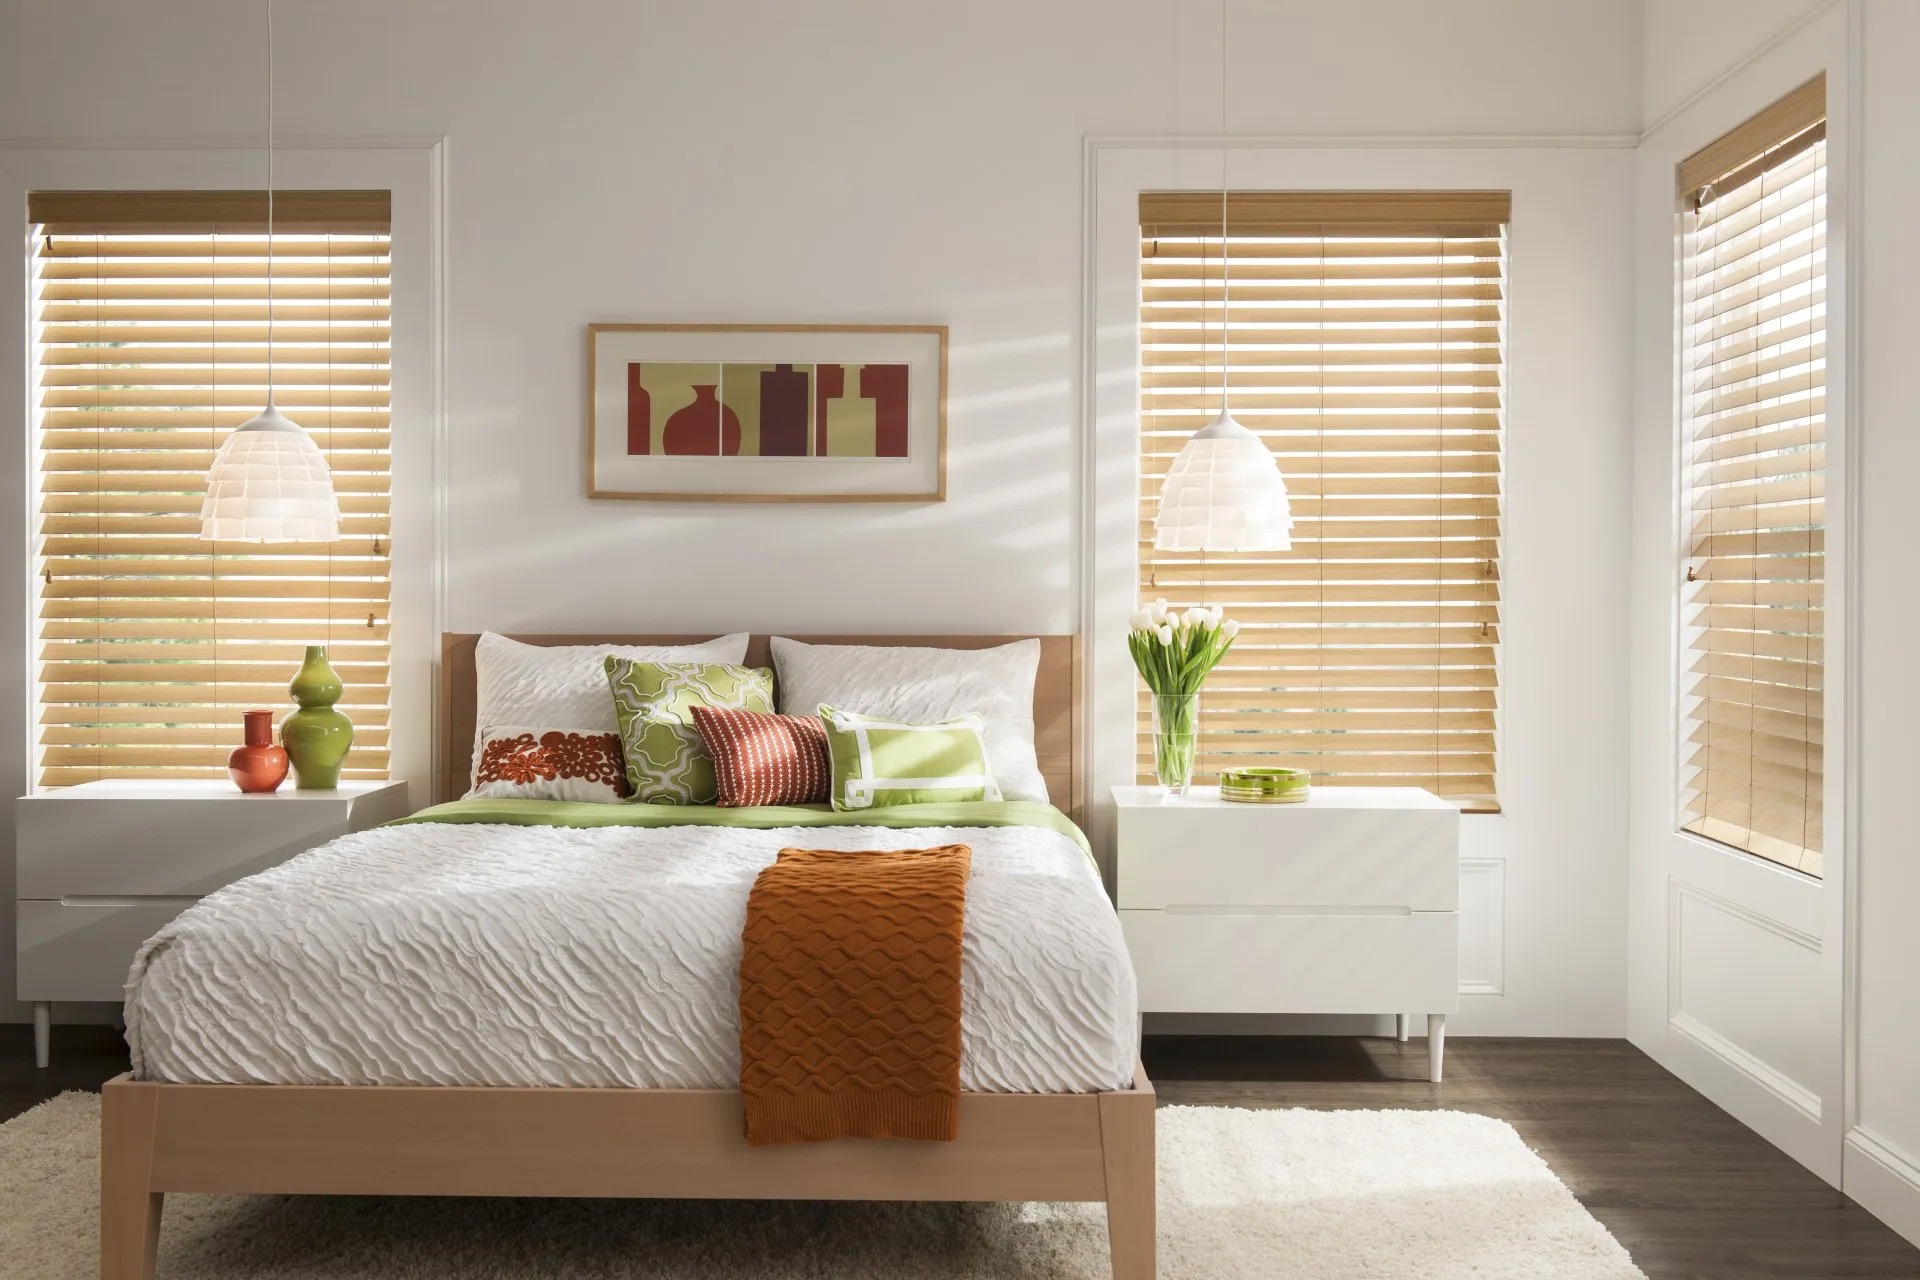 Rèm sáo gỗ tự nhiên mang đến cảm giác ấm áp cho phòng ngủ